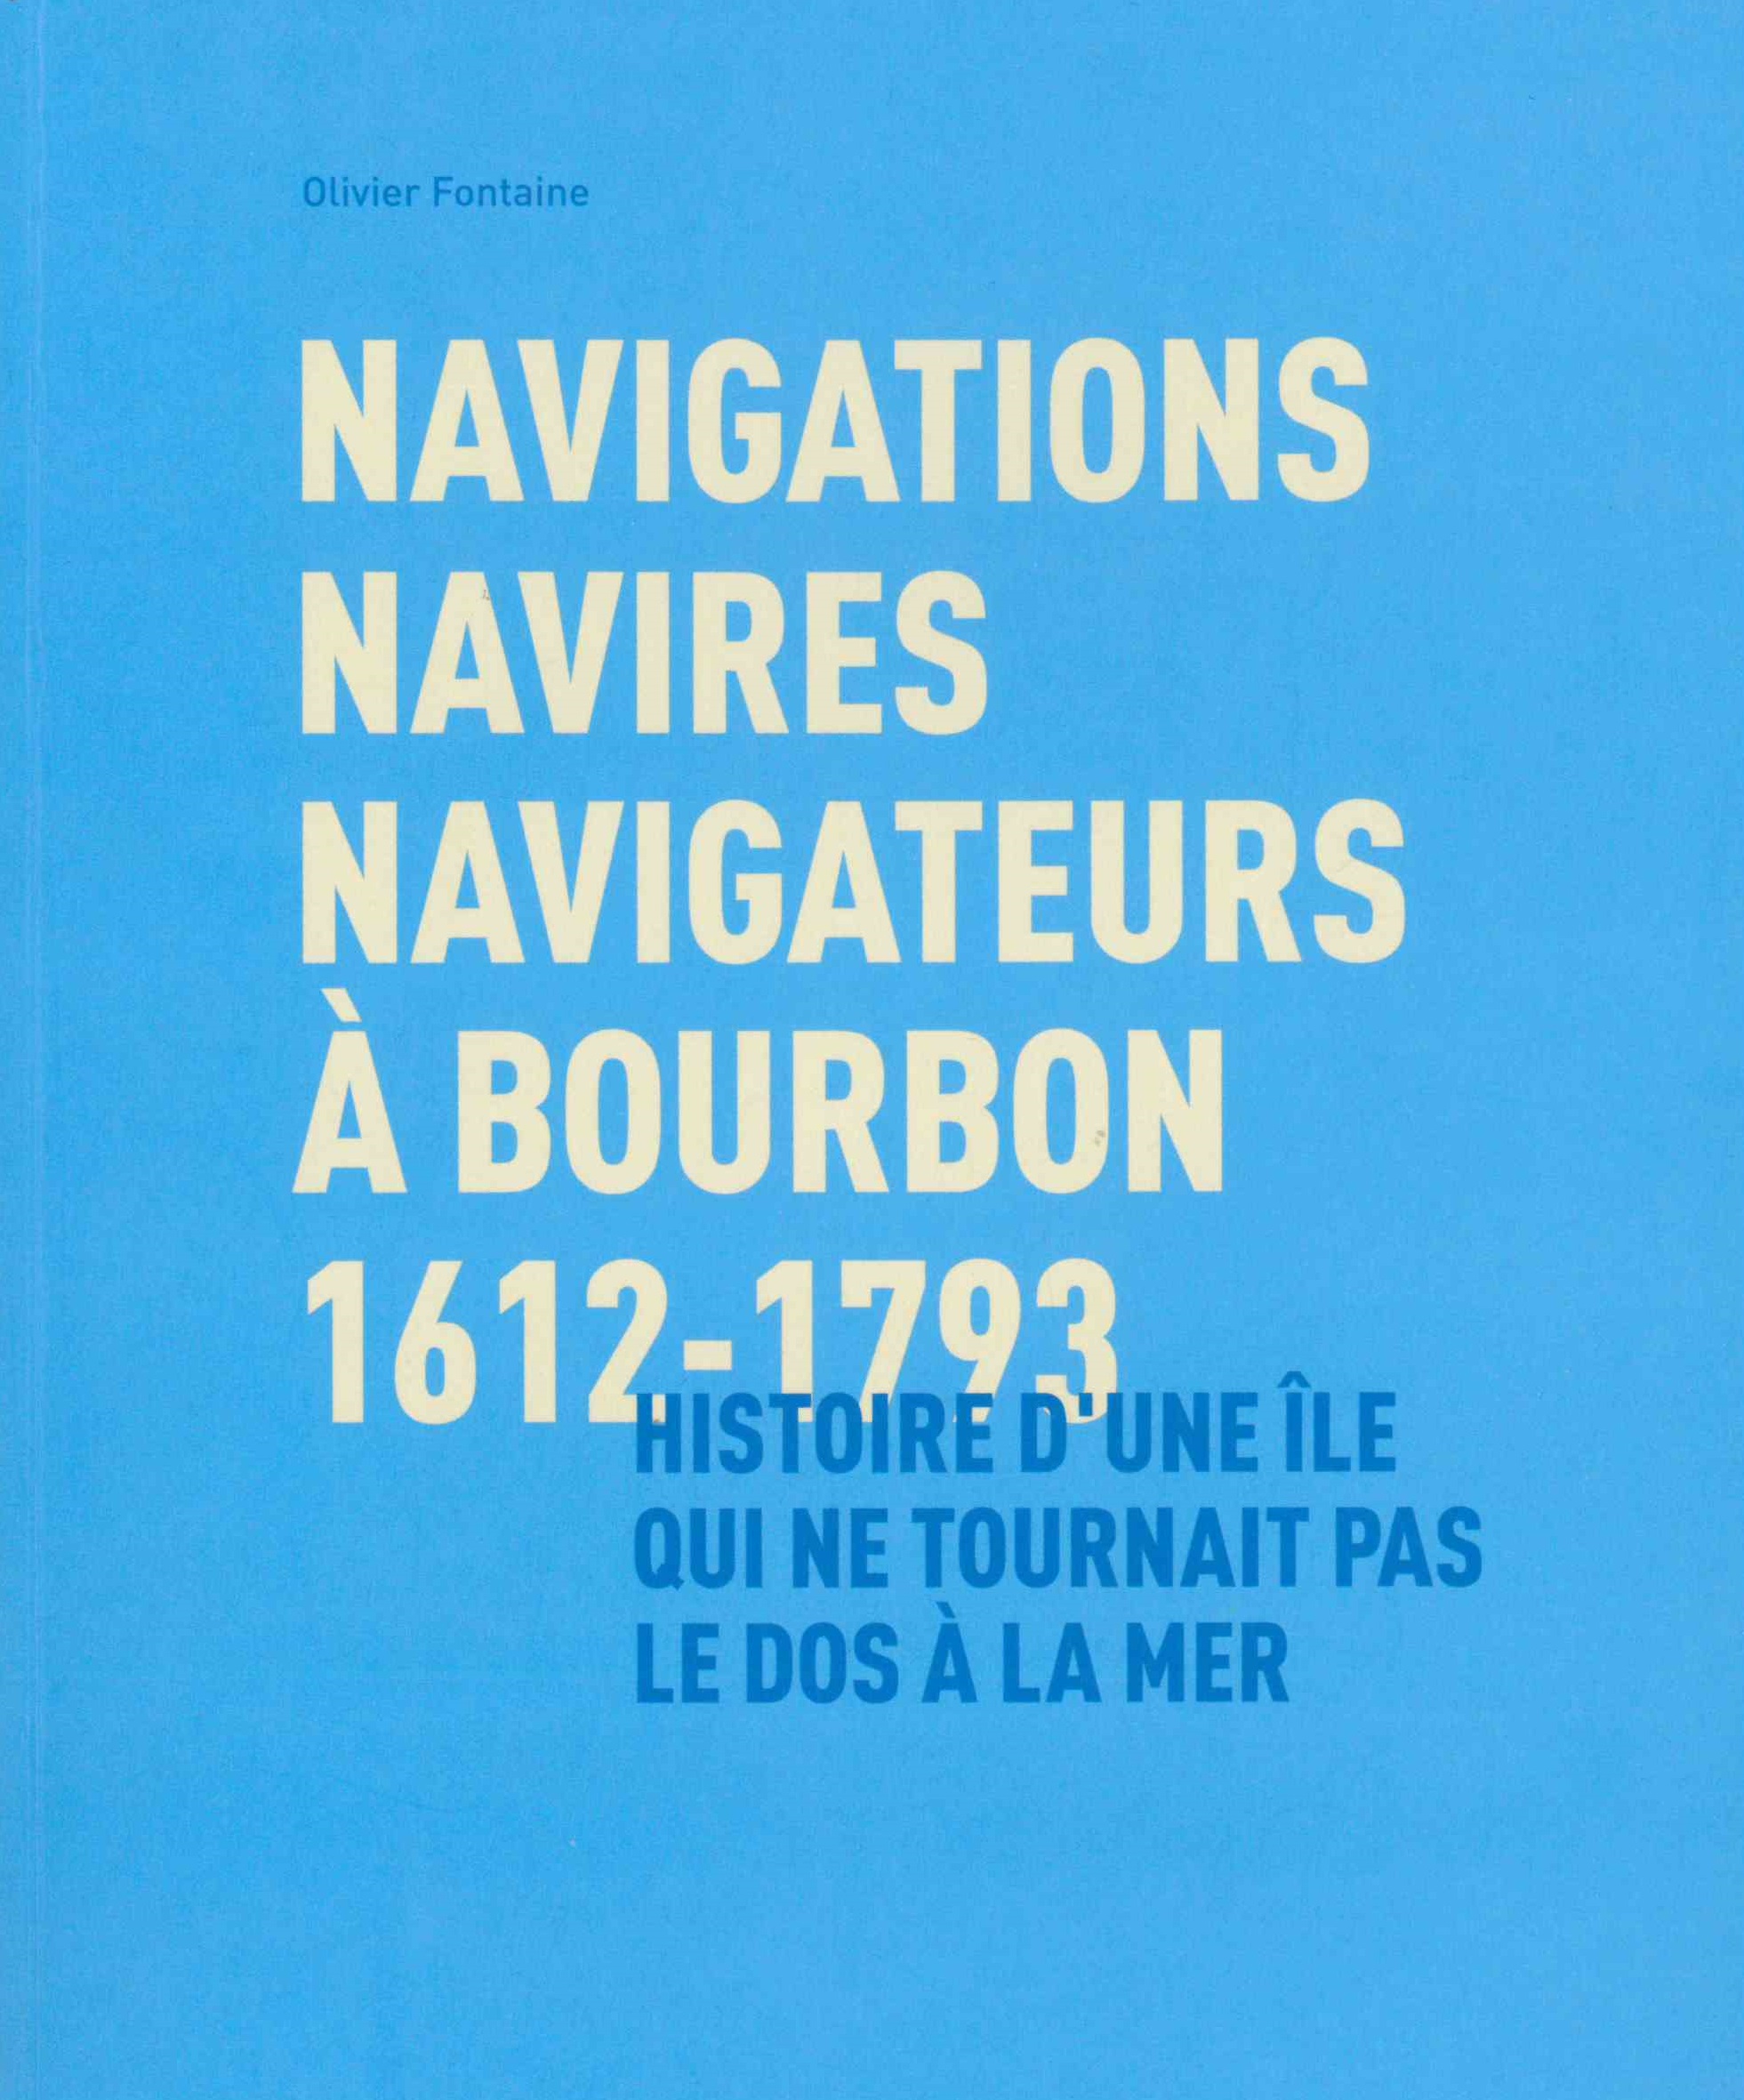 Fontaine-Kermarrec (Olivier), Navigations, navires, navigateurs à Bourbon, 1612-1793 : histoire d’une île qui ne tournait pas le dos à la mer